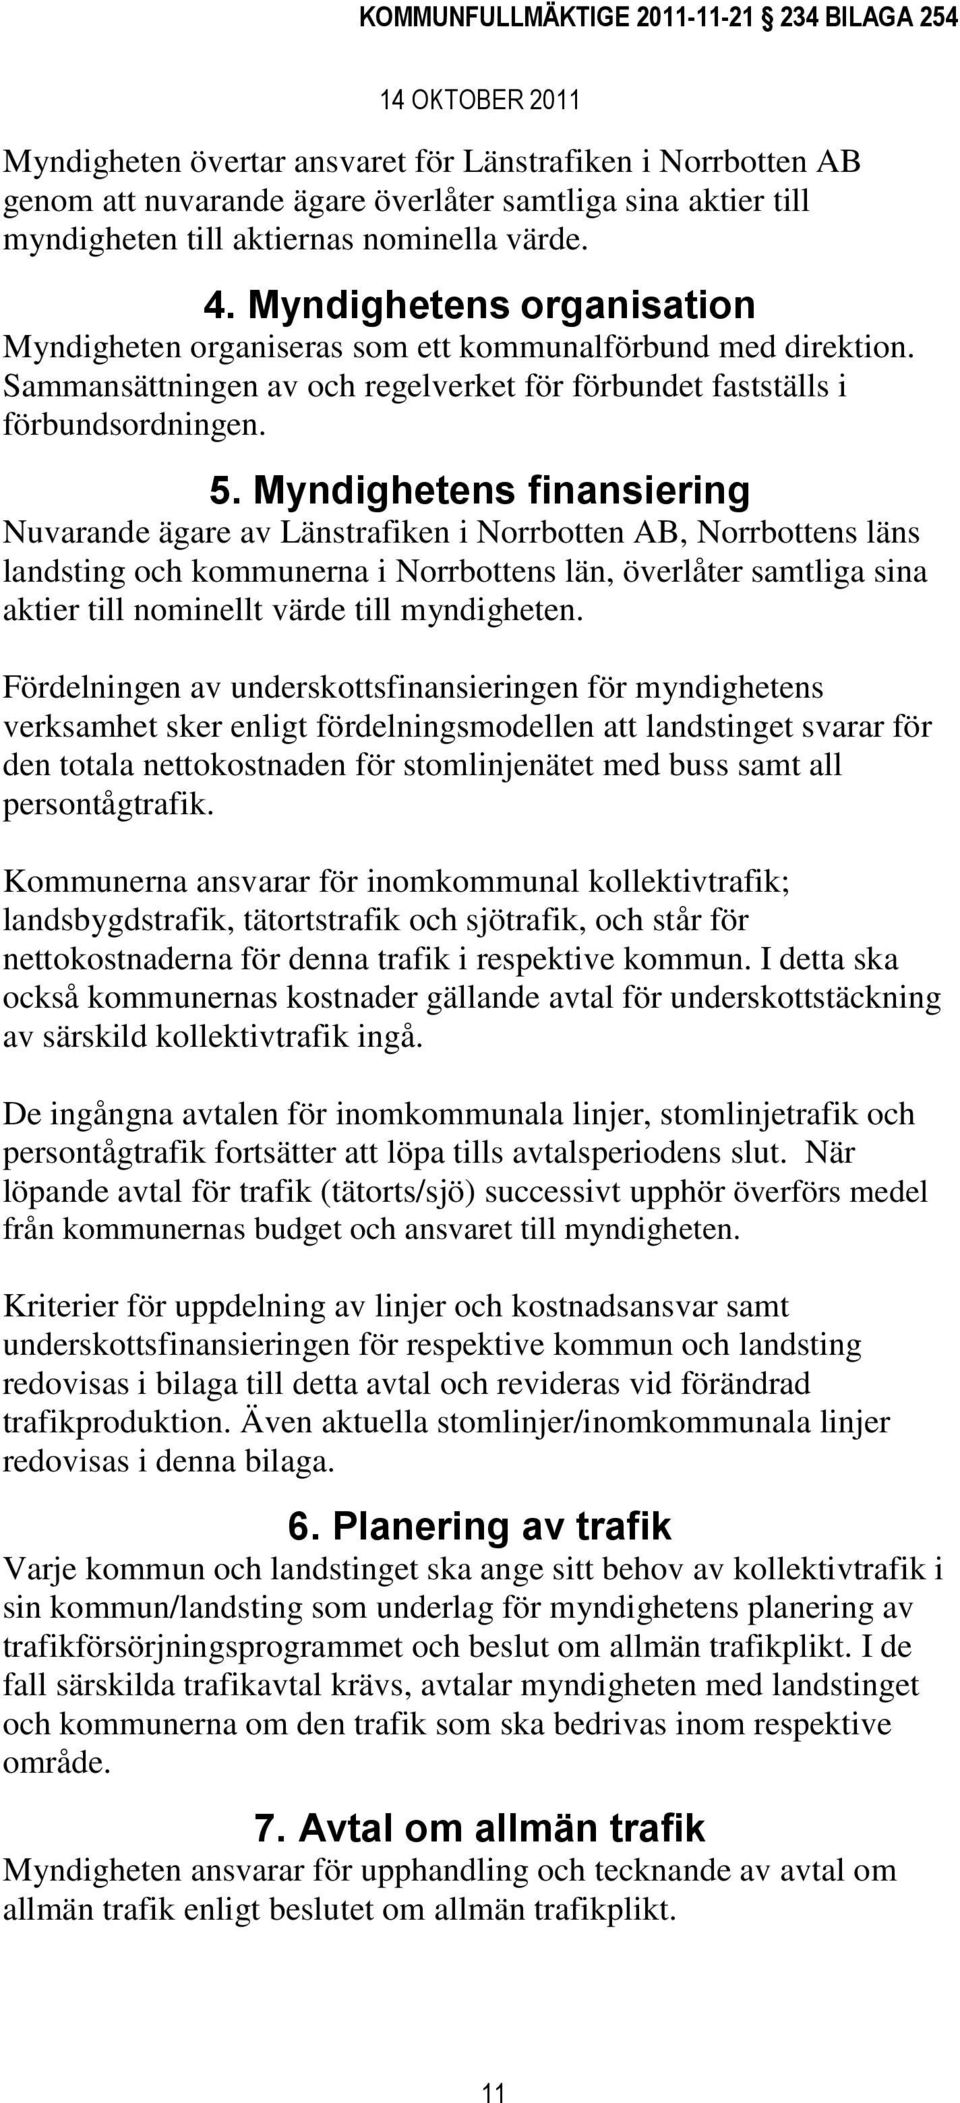 Myndighetens finansiering Nuvarande ägare av Länstrafiken i Norrbotten AB, Norrbottens läns landsting och kommunerna i Norrbottens län, överlåter samtliga sina aktier till nominellt värde till